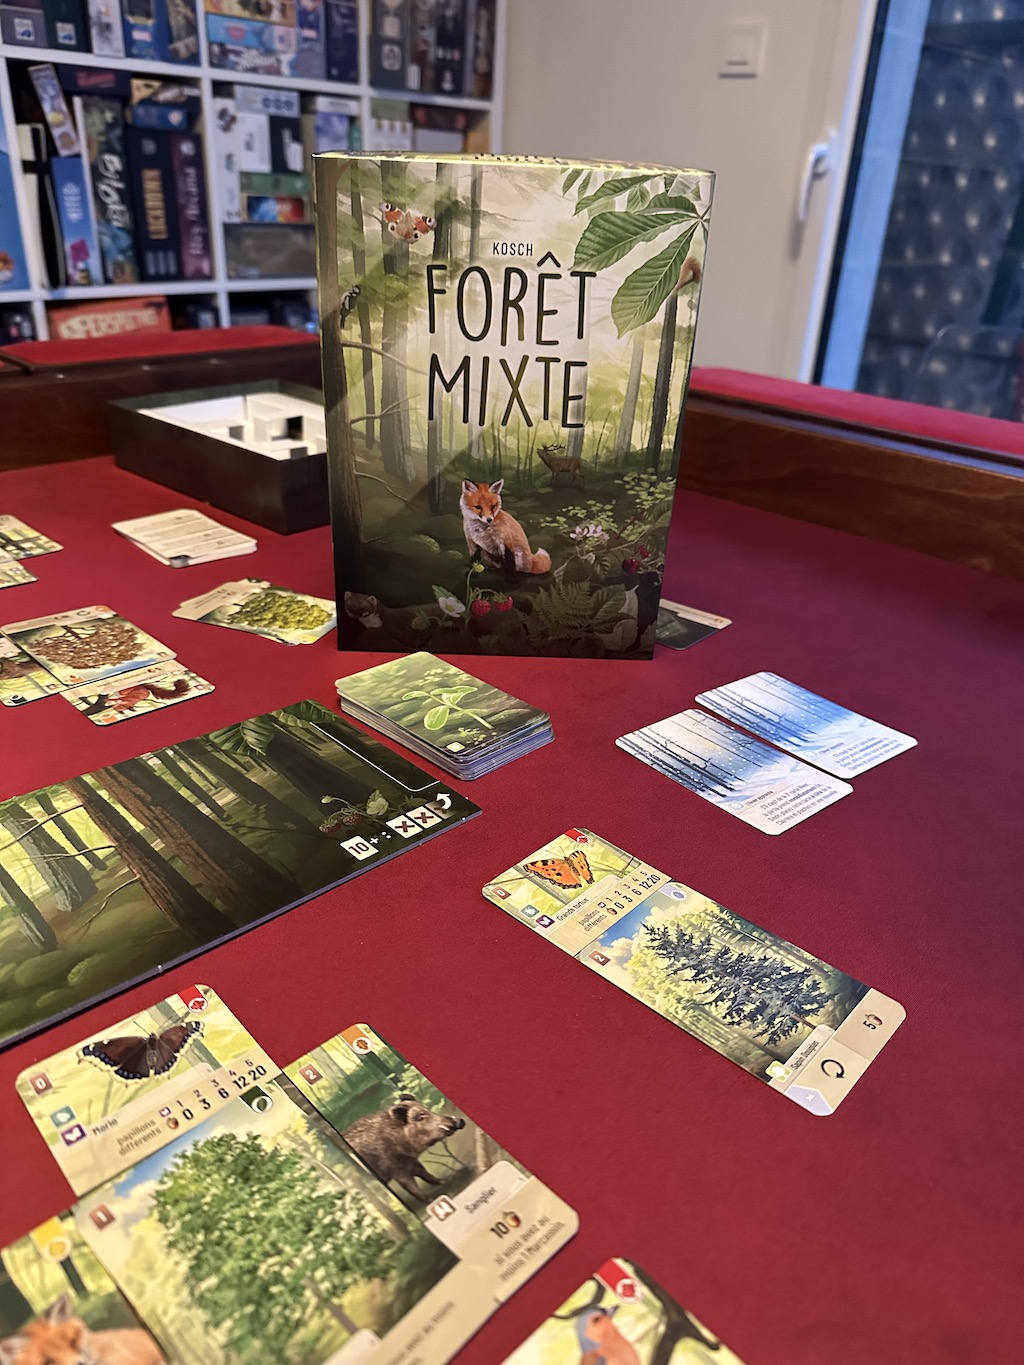 Forêt Mixte - Un des jeux de société de l'année ? - Gaming Family